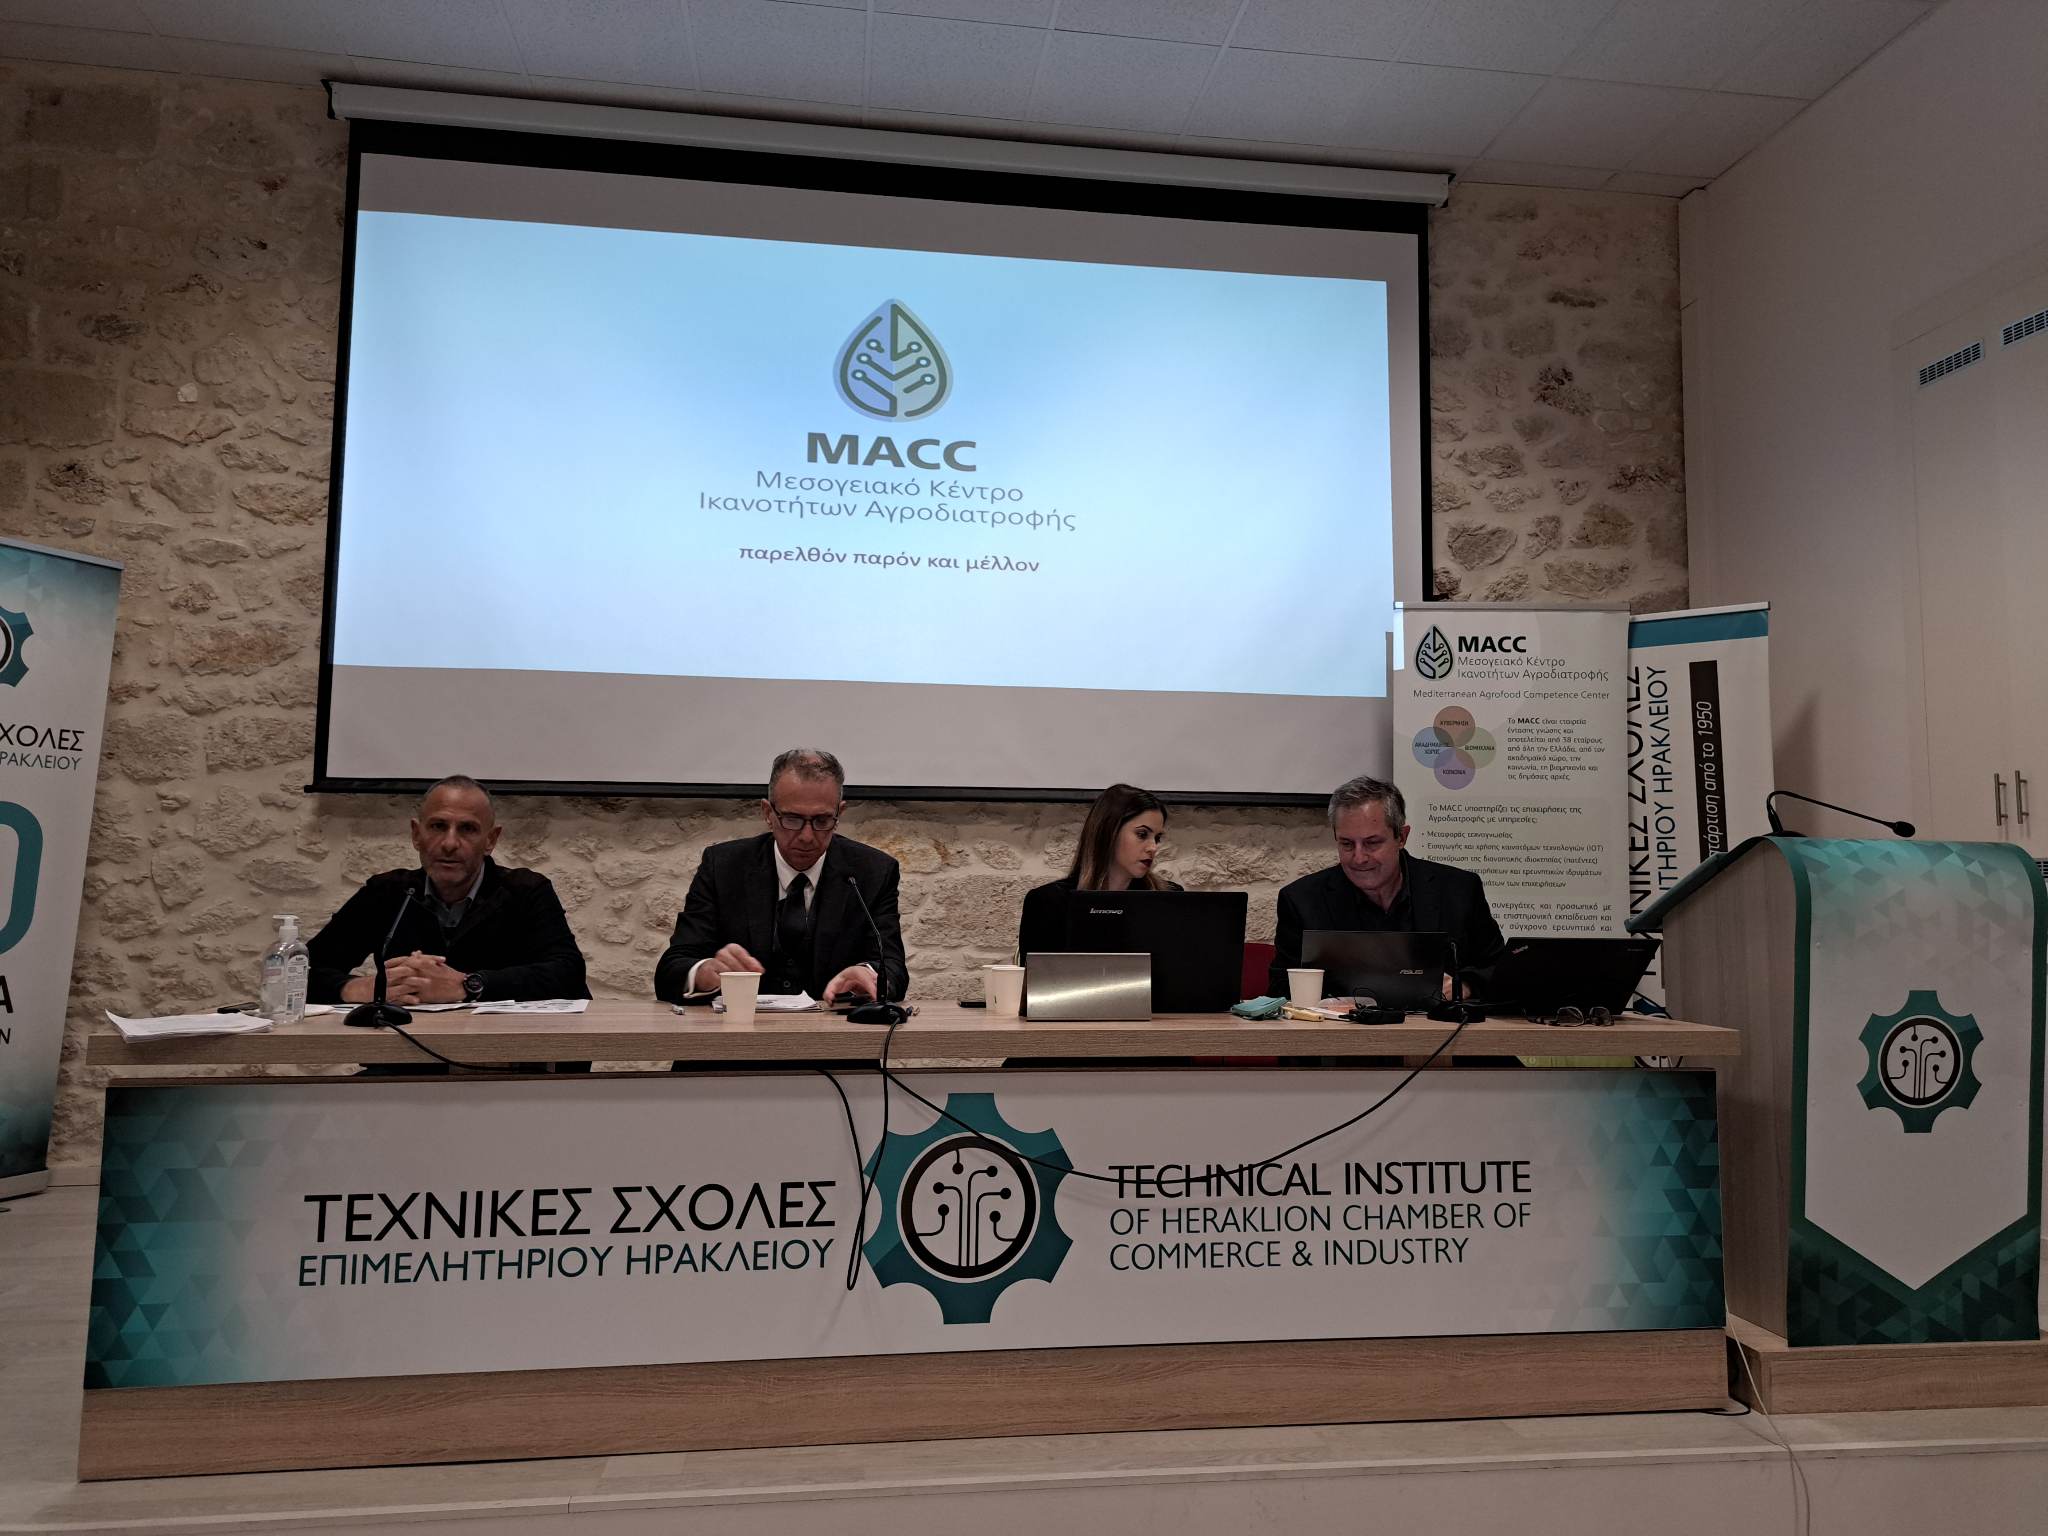 Το Μεσογειακό Κέντρο Iκανοτήτων Αγροδιατροφής στο Ηράκλειο Κρήτης (ΜACC) καινοτομεί στο κατώφλι του 2023